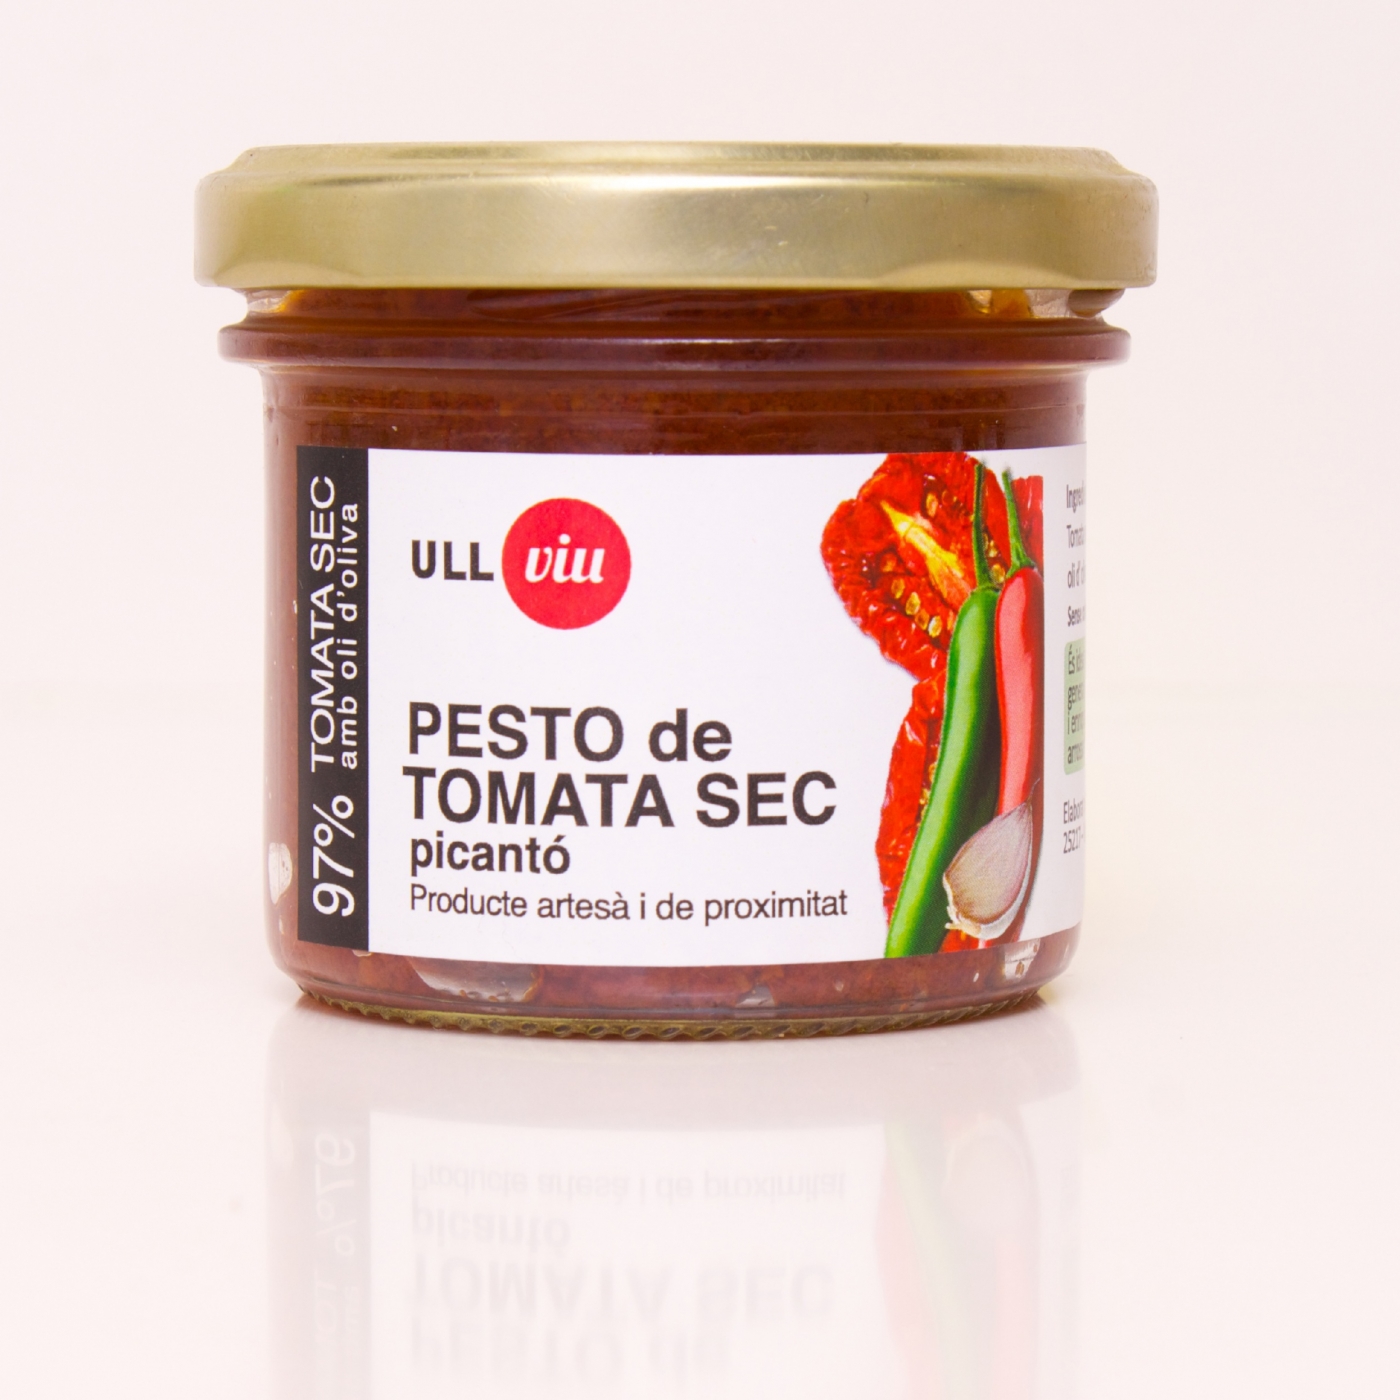 Pesto de tomata sec picantó (PICANT) 110 grams - 